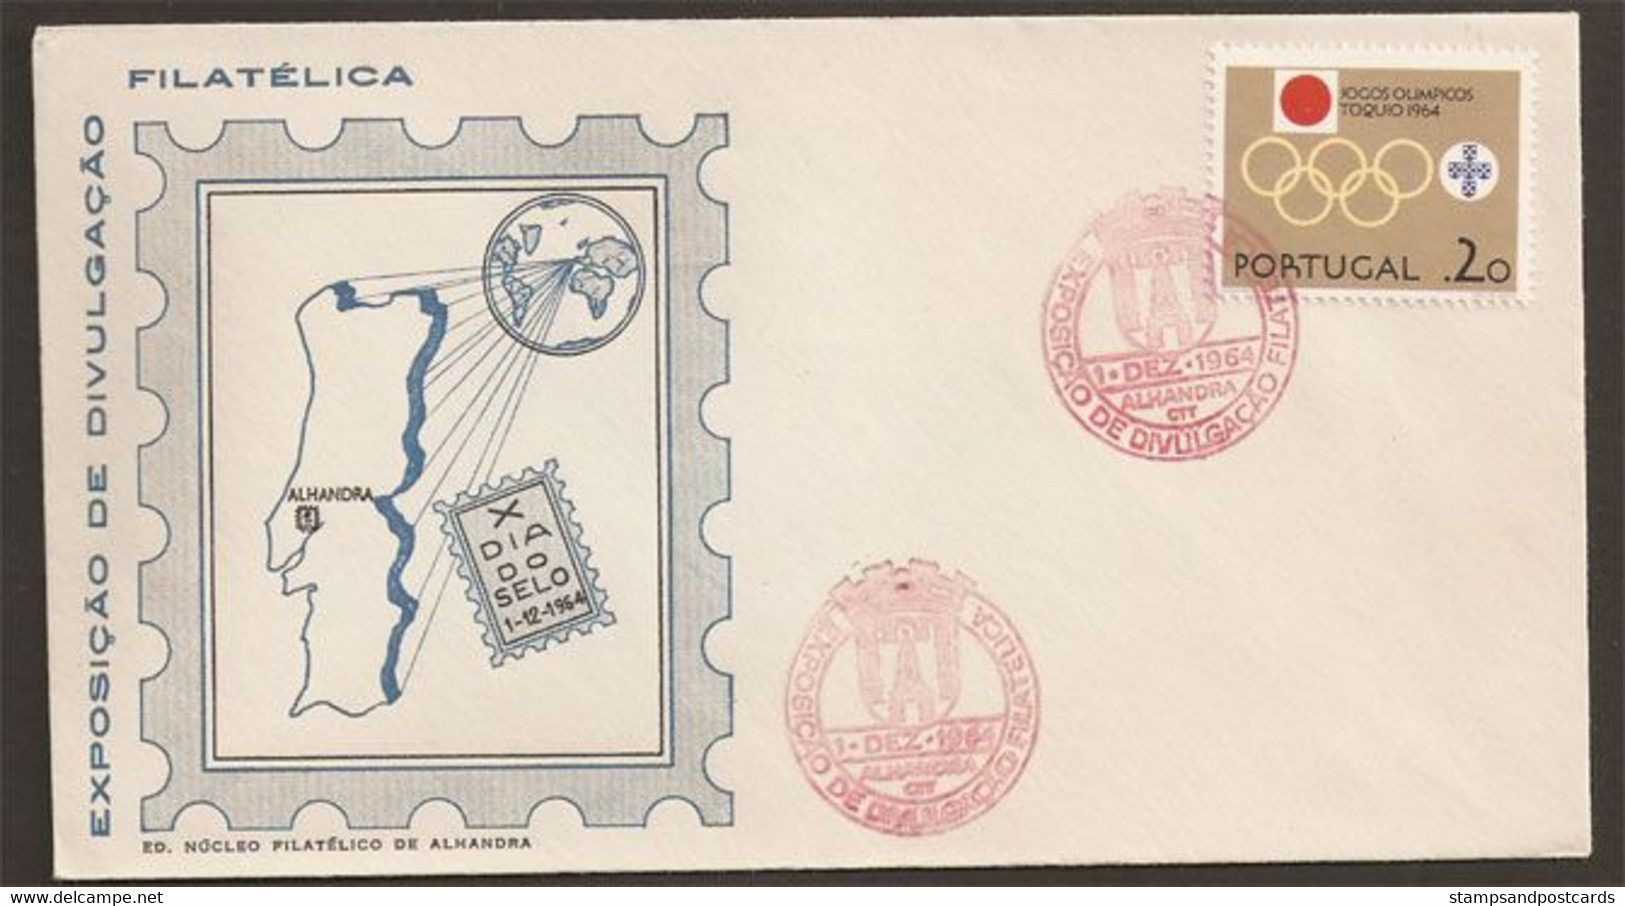 Portugal Cachet Commémoratif Journée Du Timbre Expo 1964 Alhandra Event Postmark Stamp Day - Flammes & Oblitérations